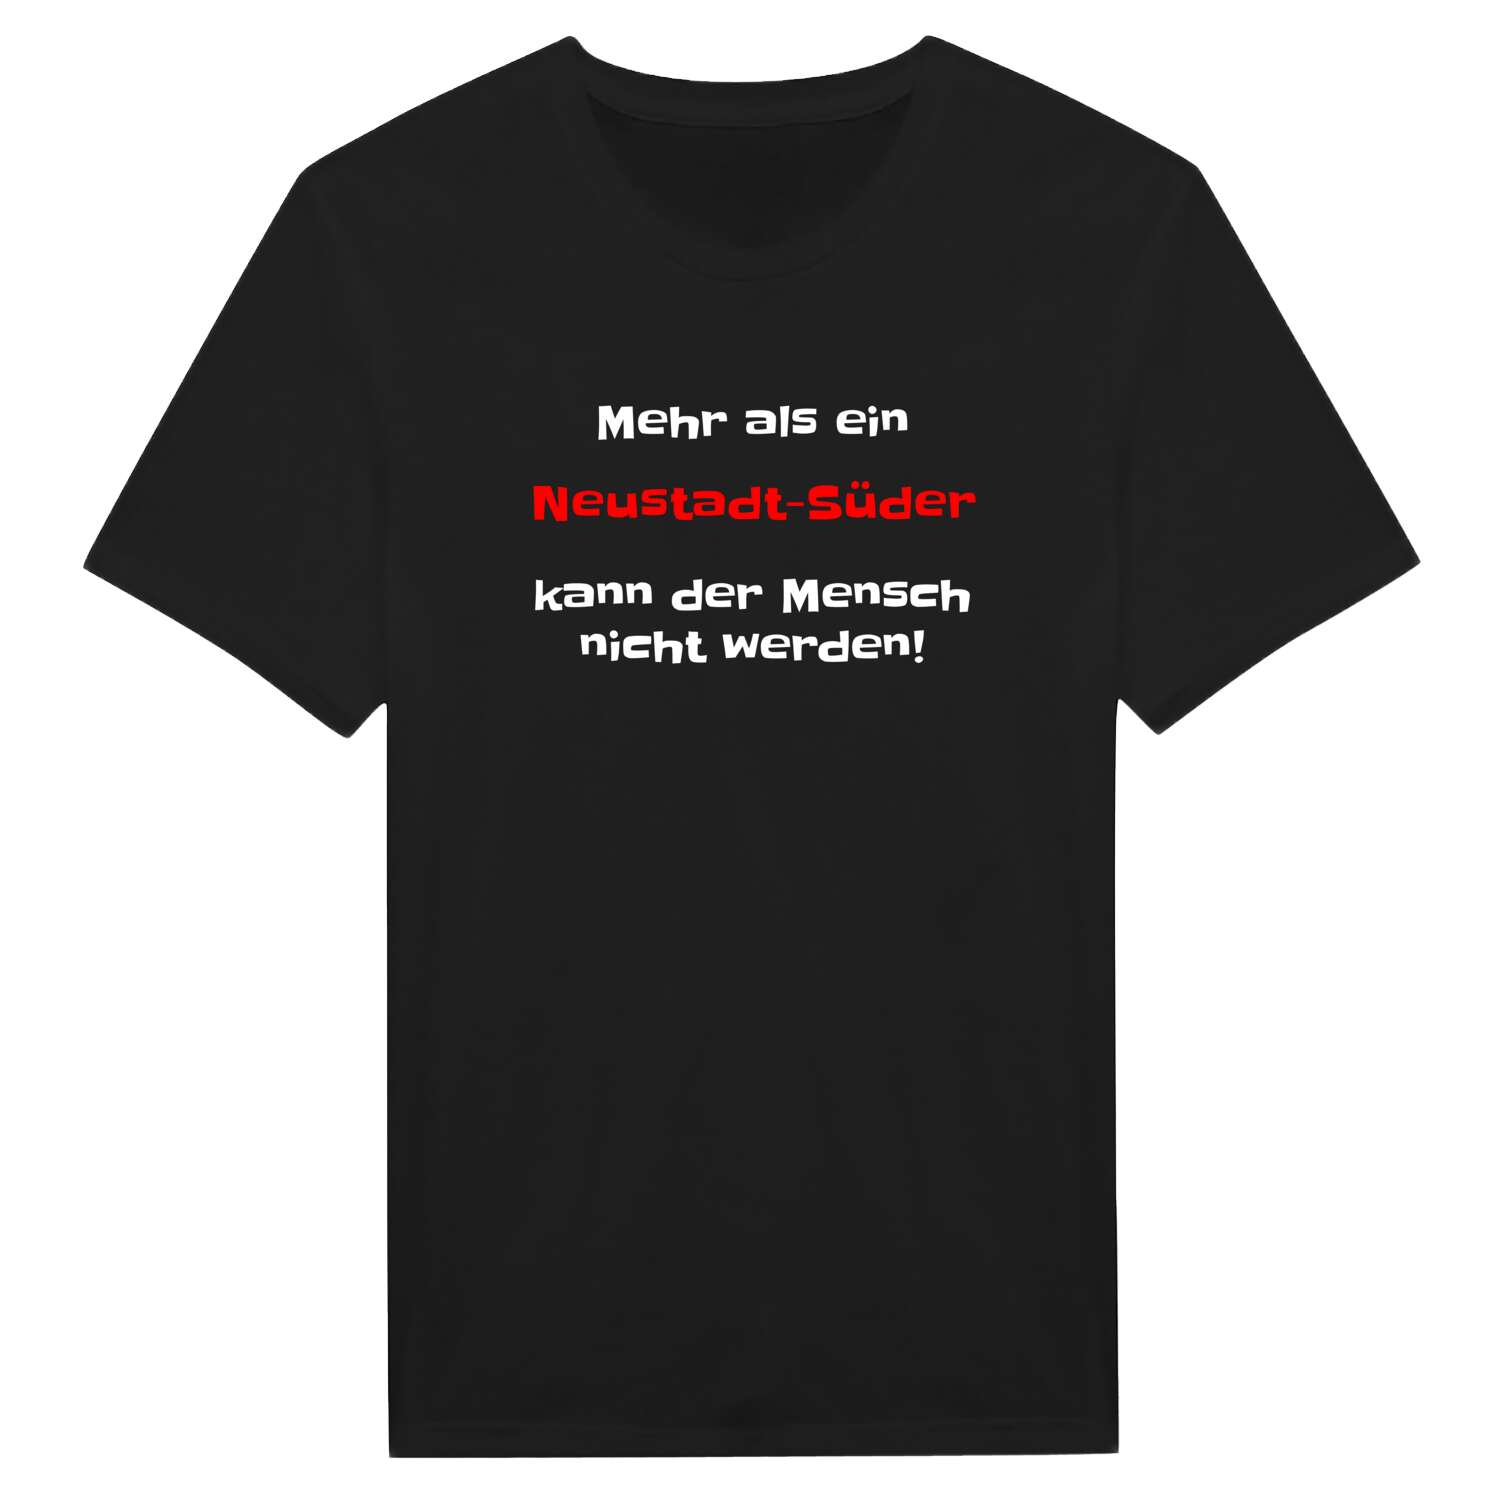 Neustadt-Süd T-Shirt »Mehr als ein«